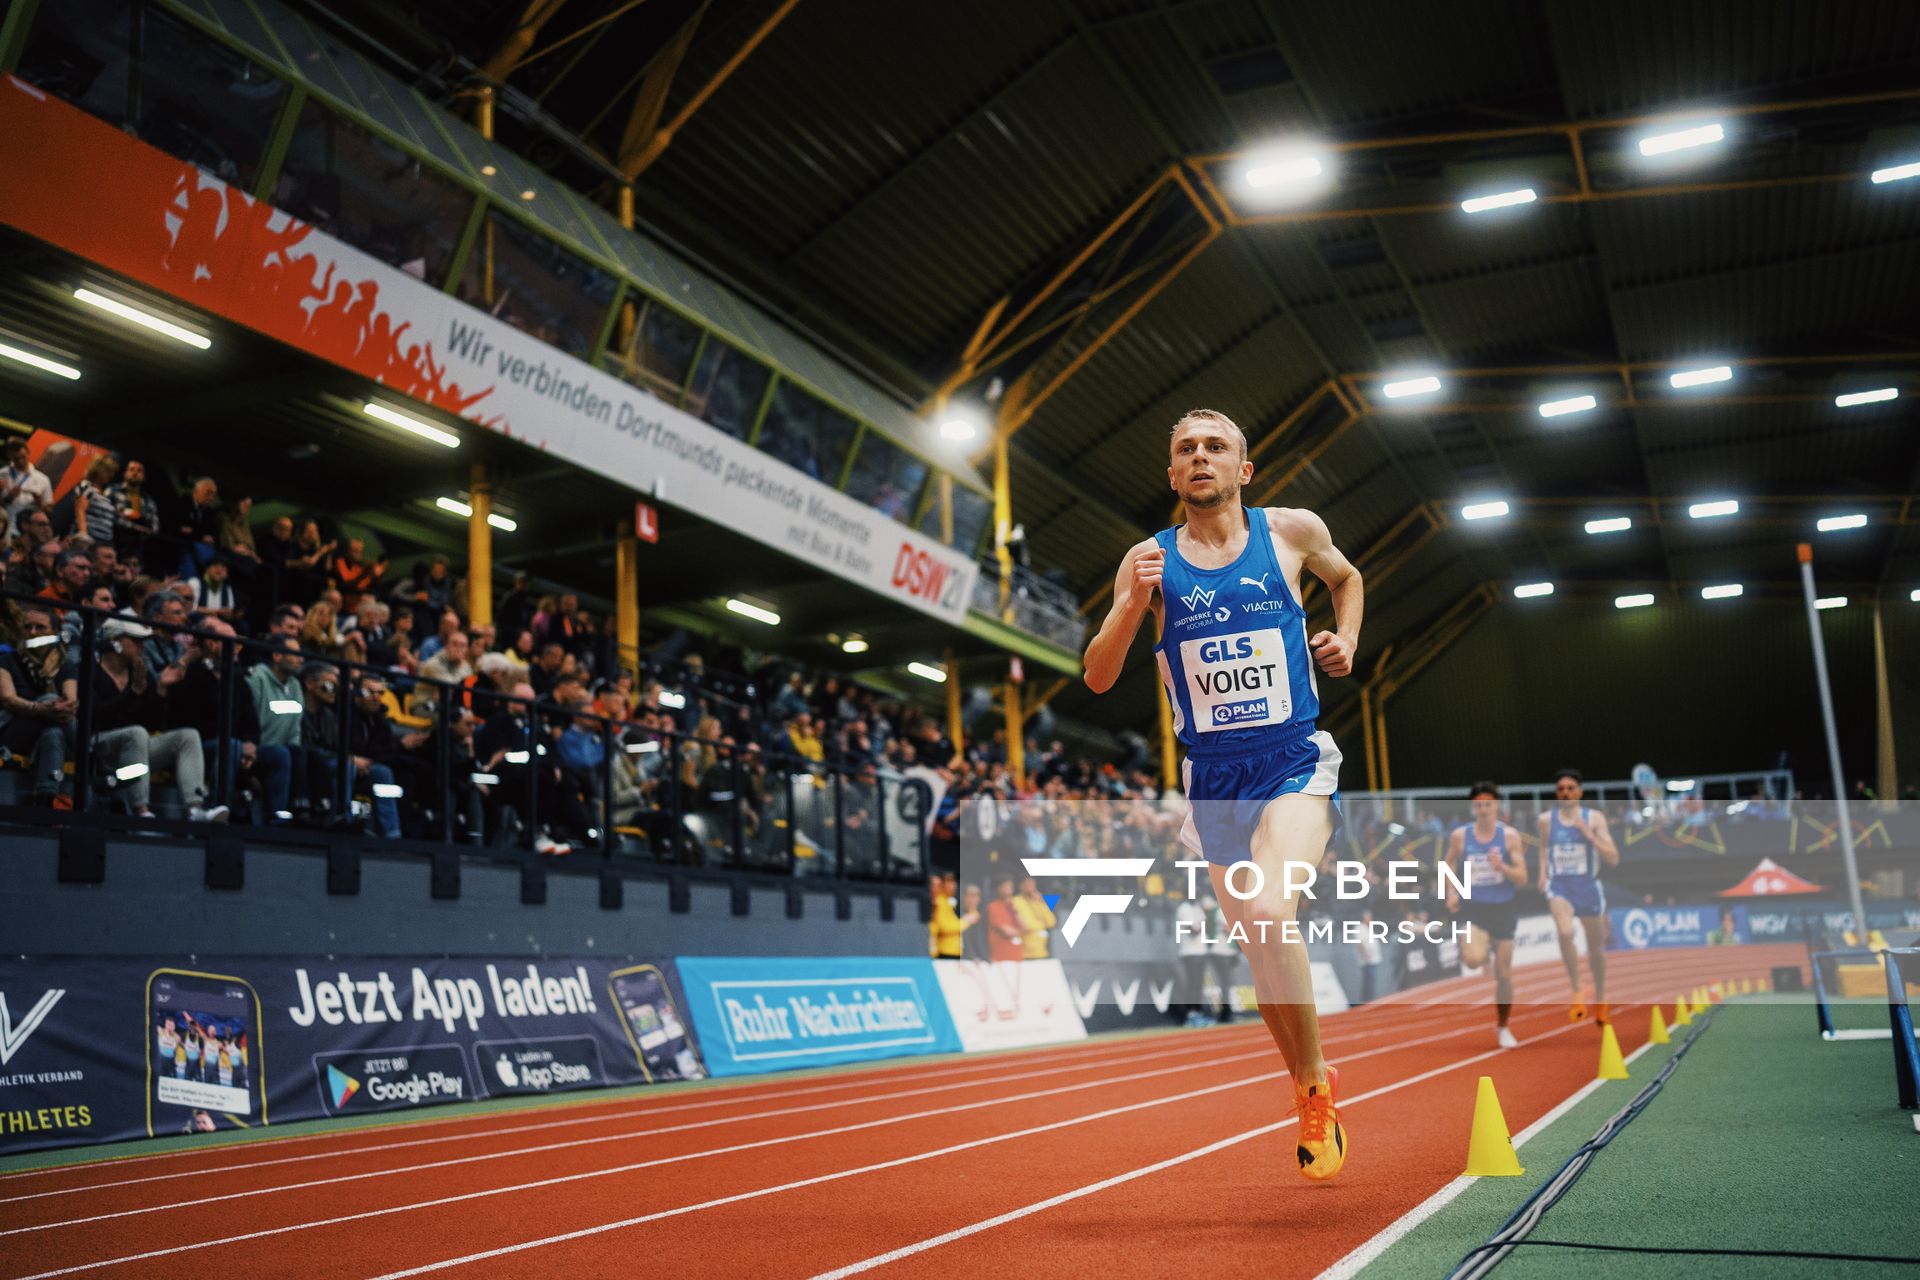 Nils Voigt (TV Wattenscheid 01) ueber 3000m bei den Deutschen Leichtathletik-Hallenmeisterschaften am 18.02.2023 in der Helmut-Koernig-Halle in Dortmund